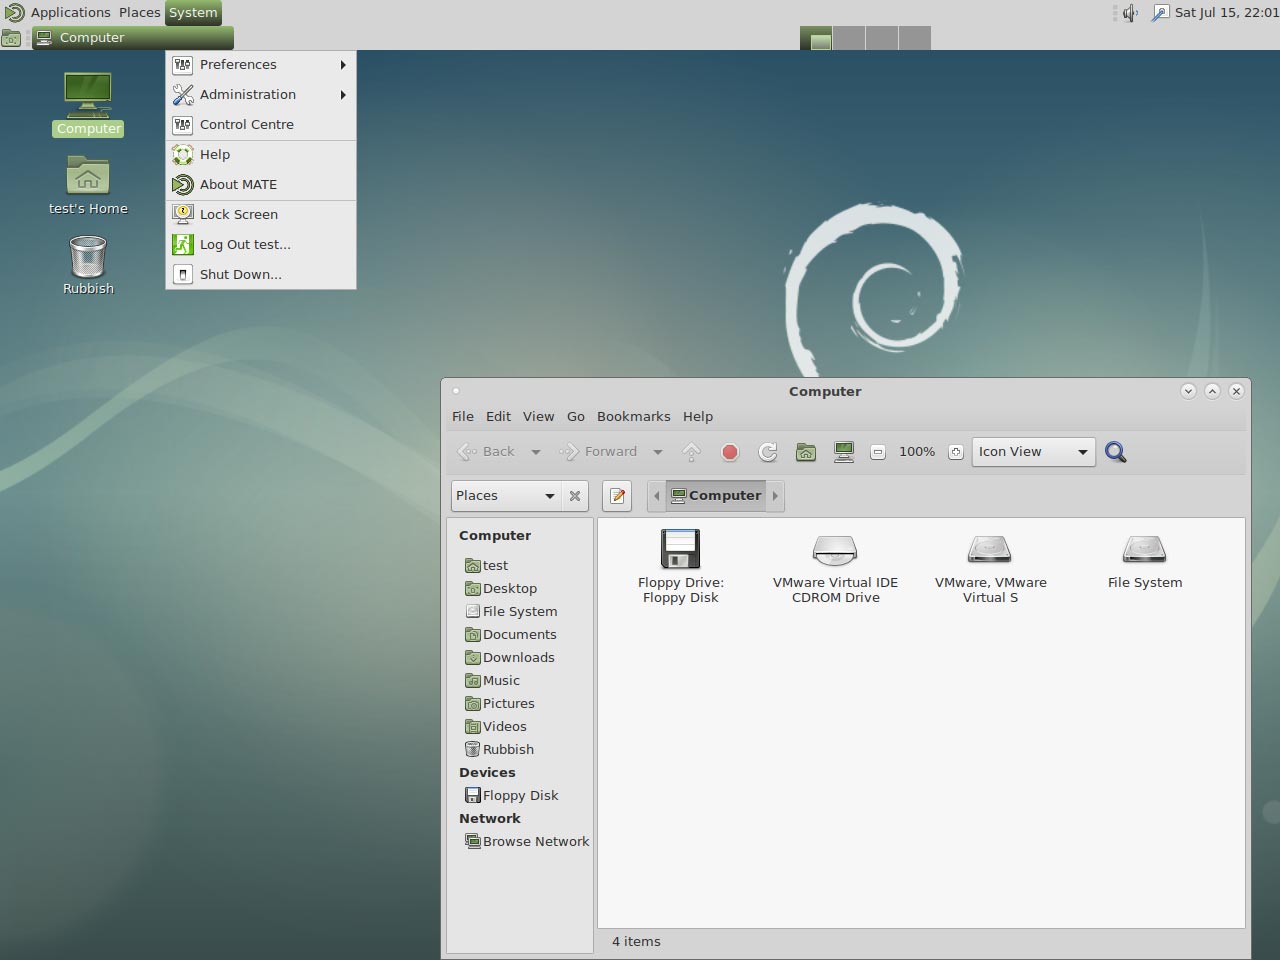 Debian 9 Stretch - MATE Desktop